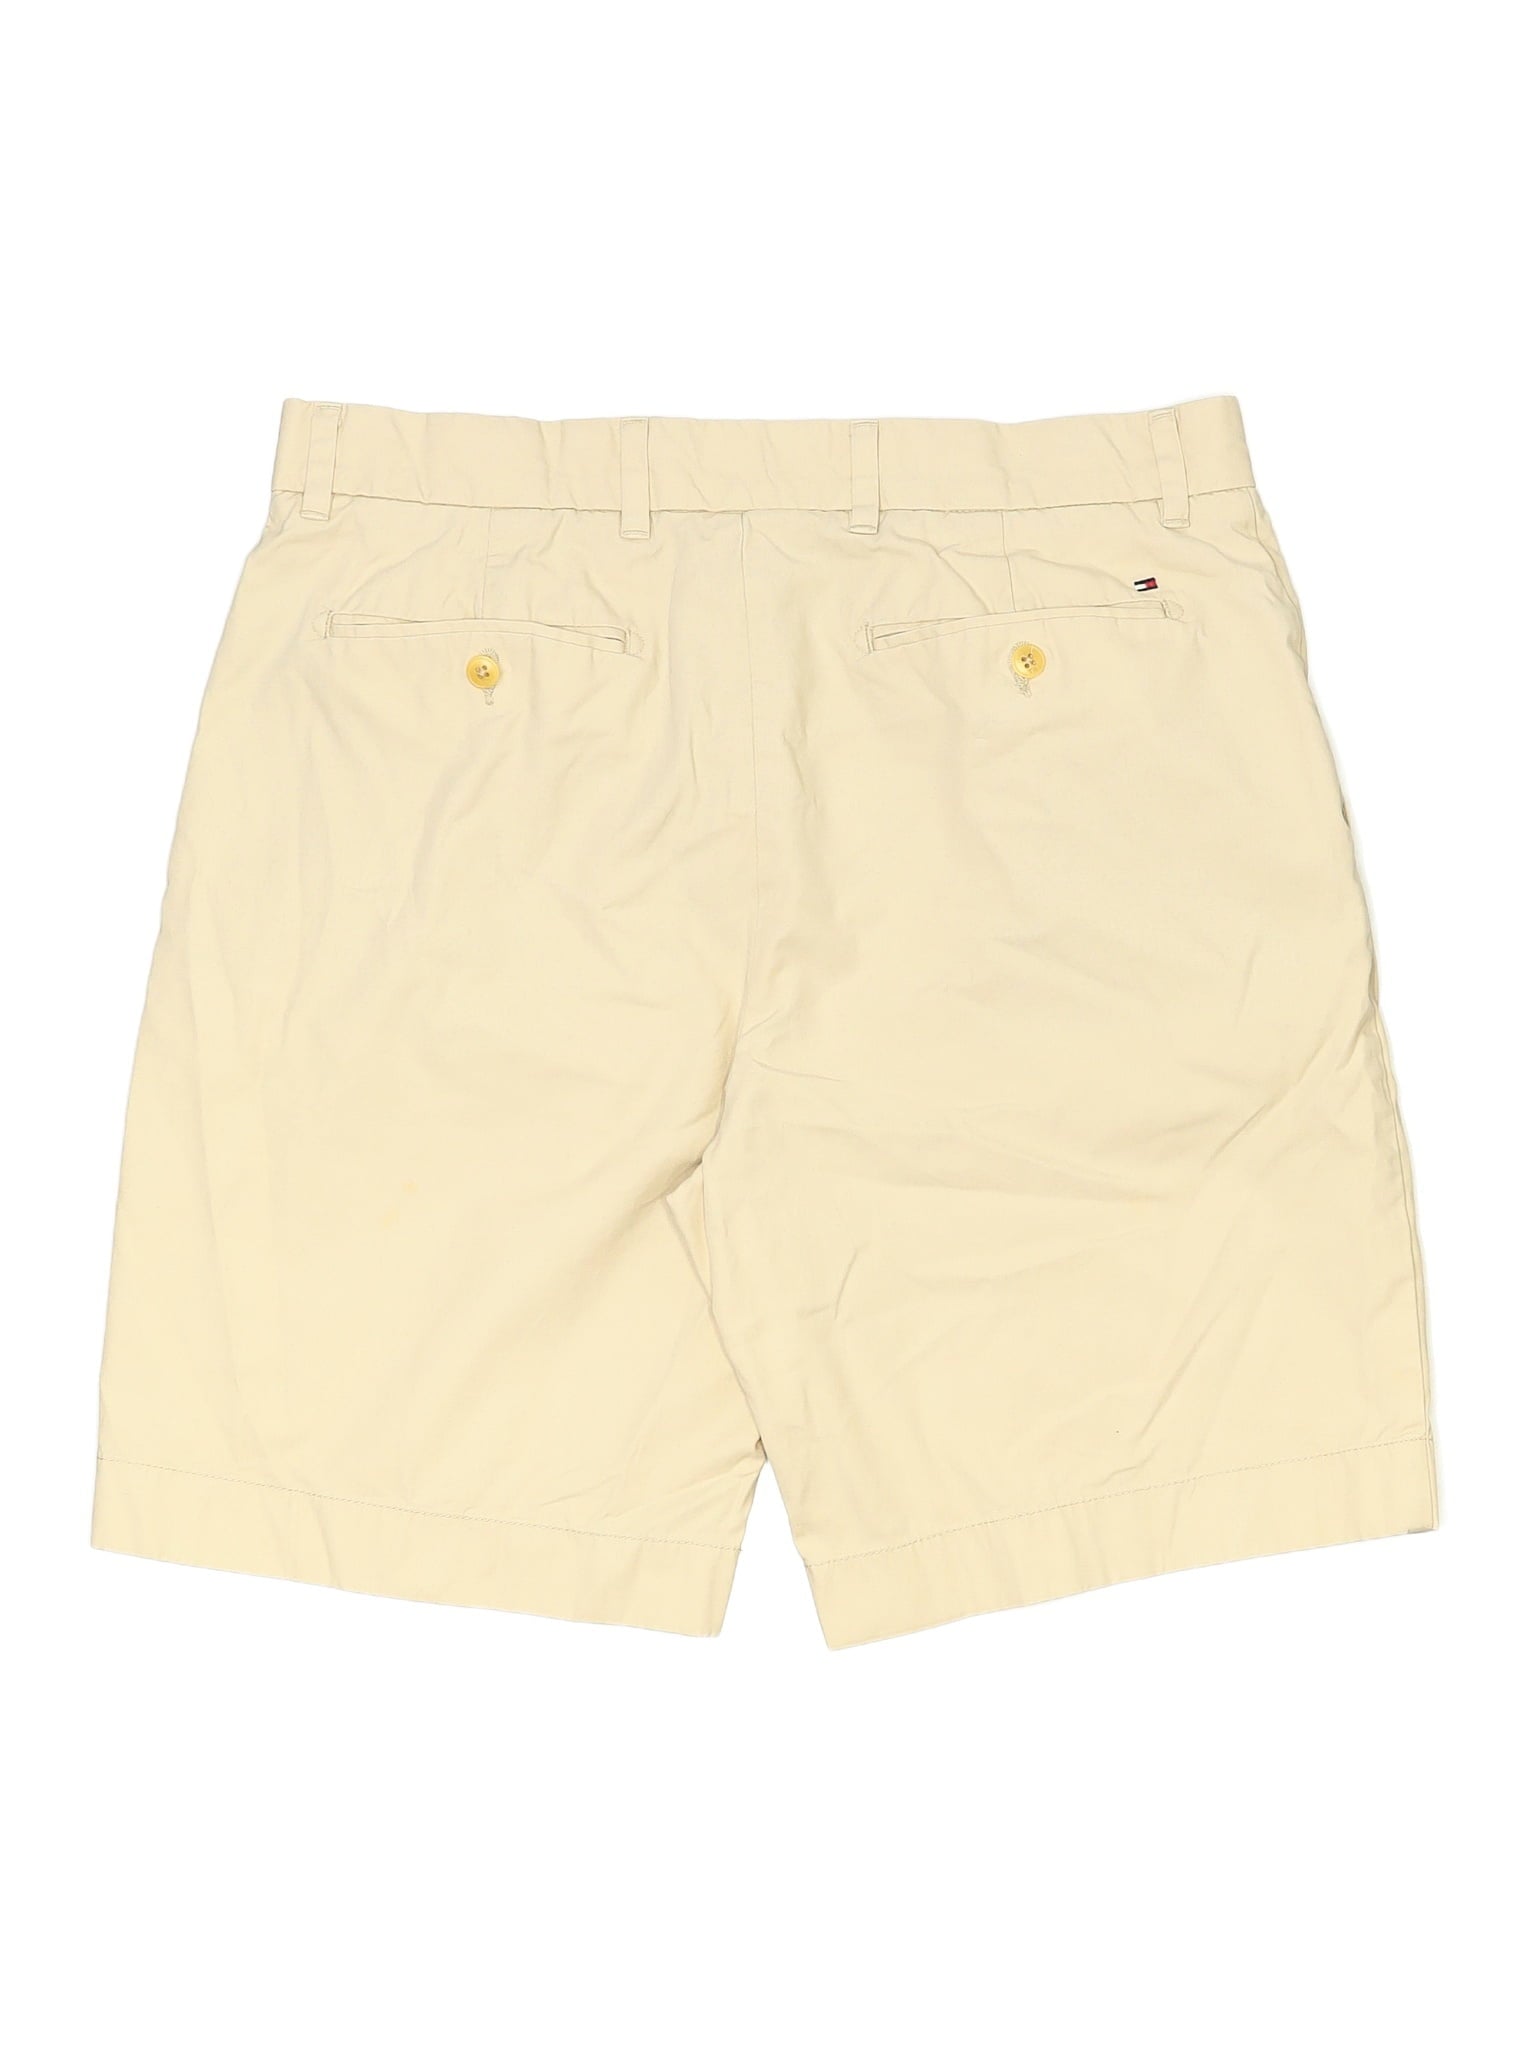 Khaki/Chino Shorts waist size - 35